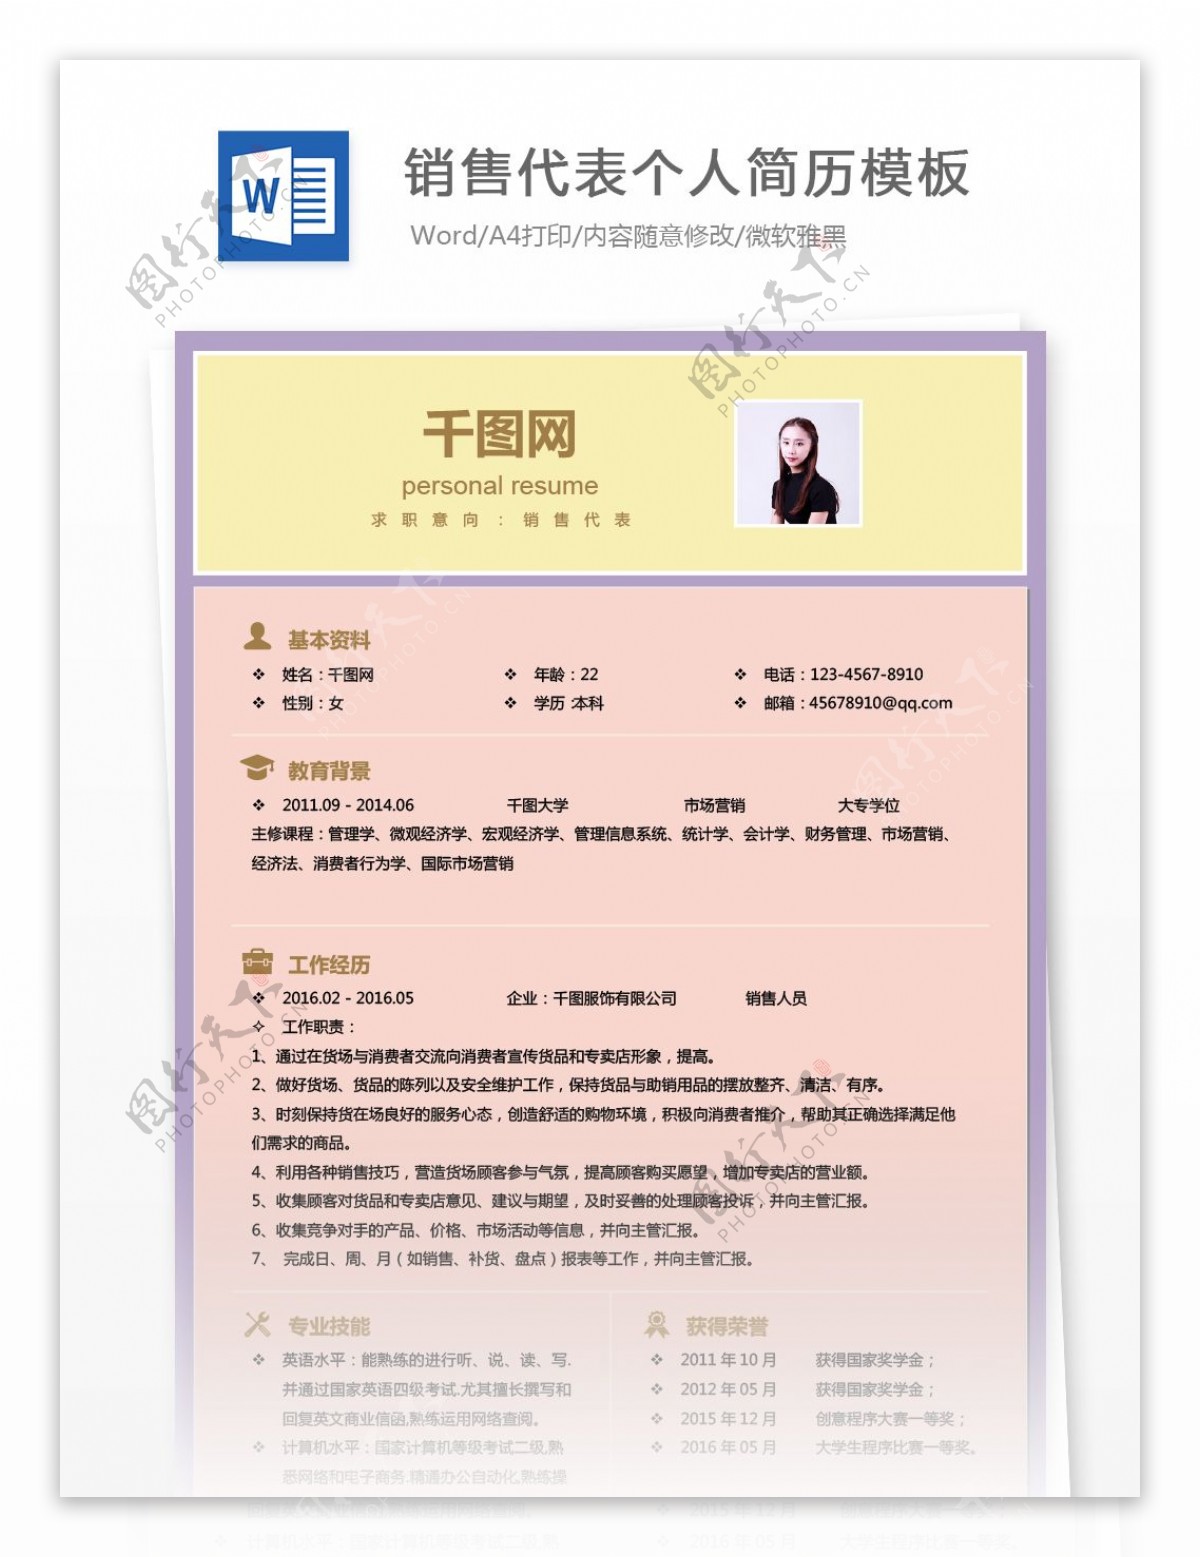 刘泽惠sale代表应届毕业生个人简历模板